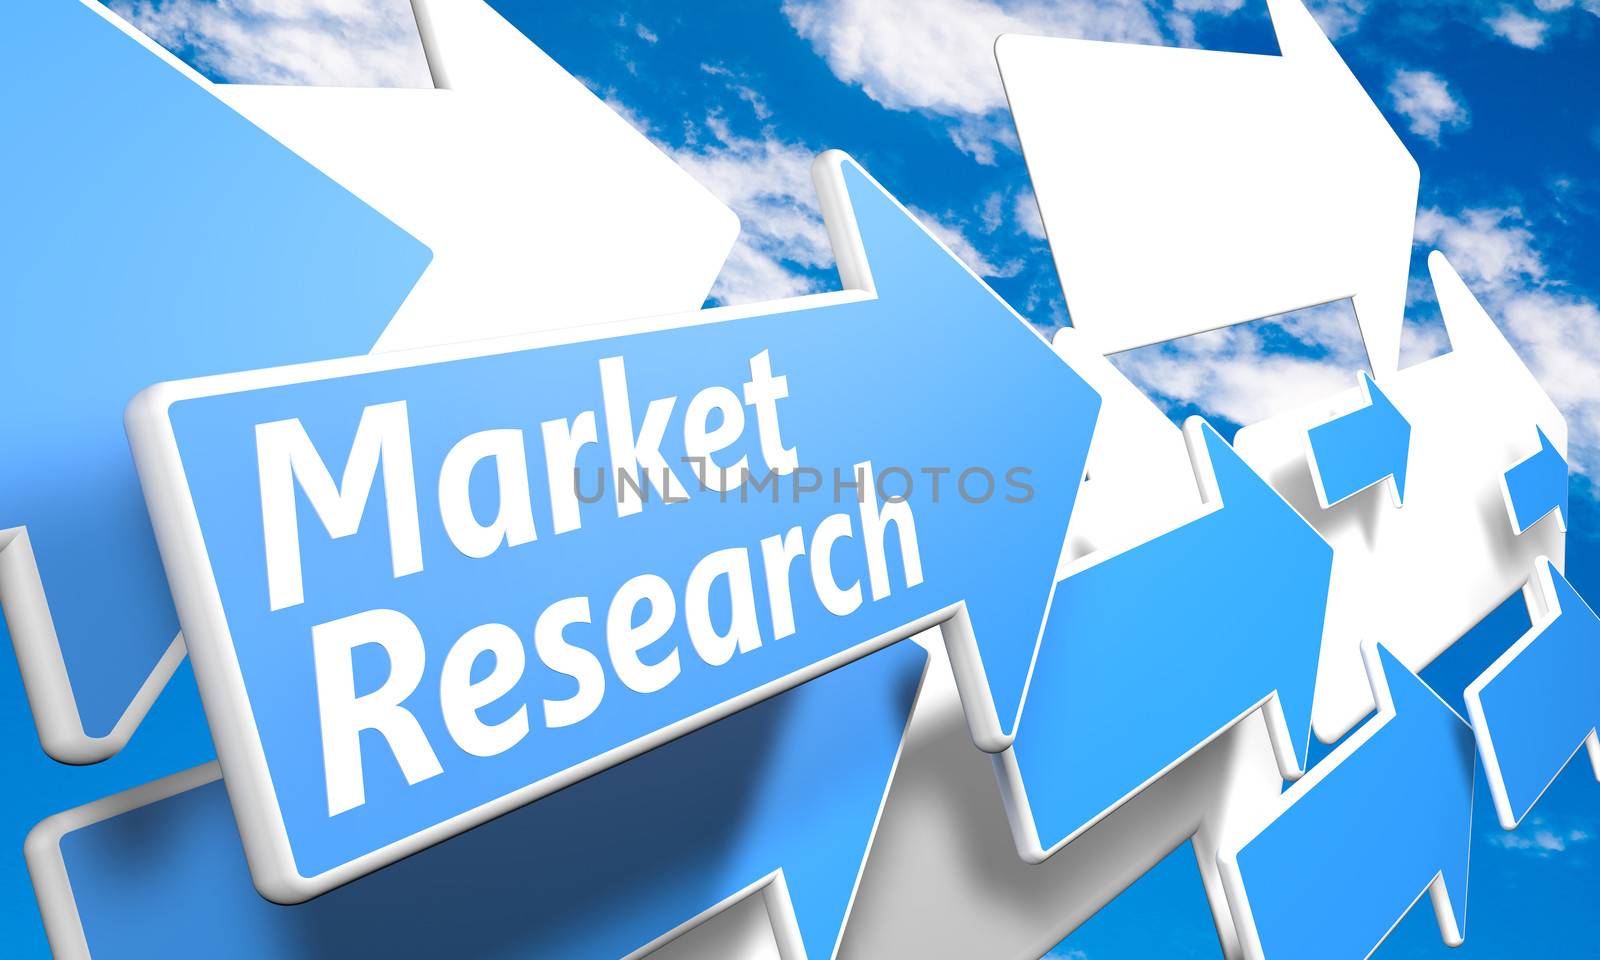 Market Research by Mazirama